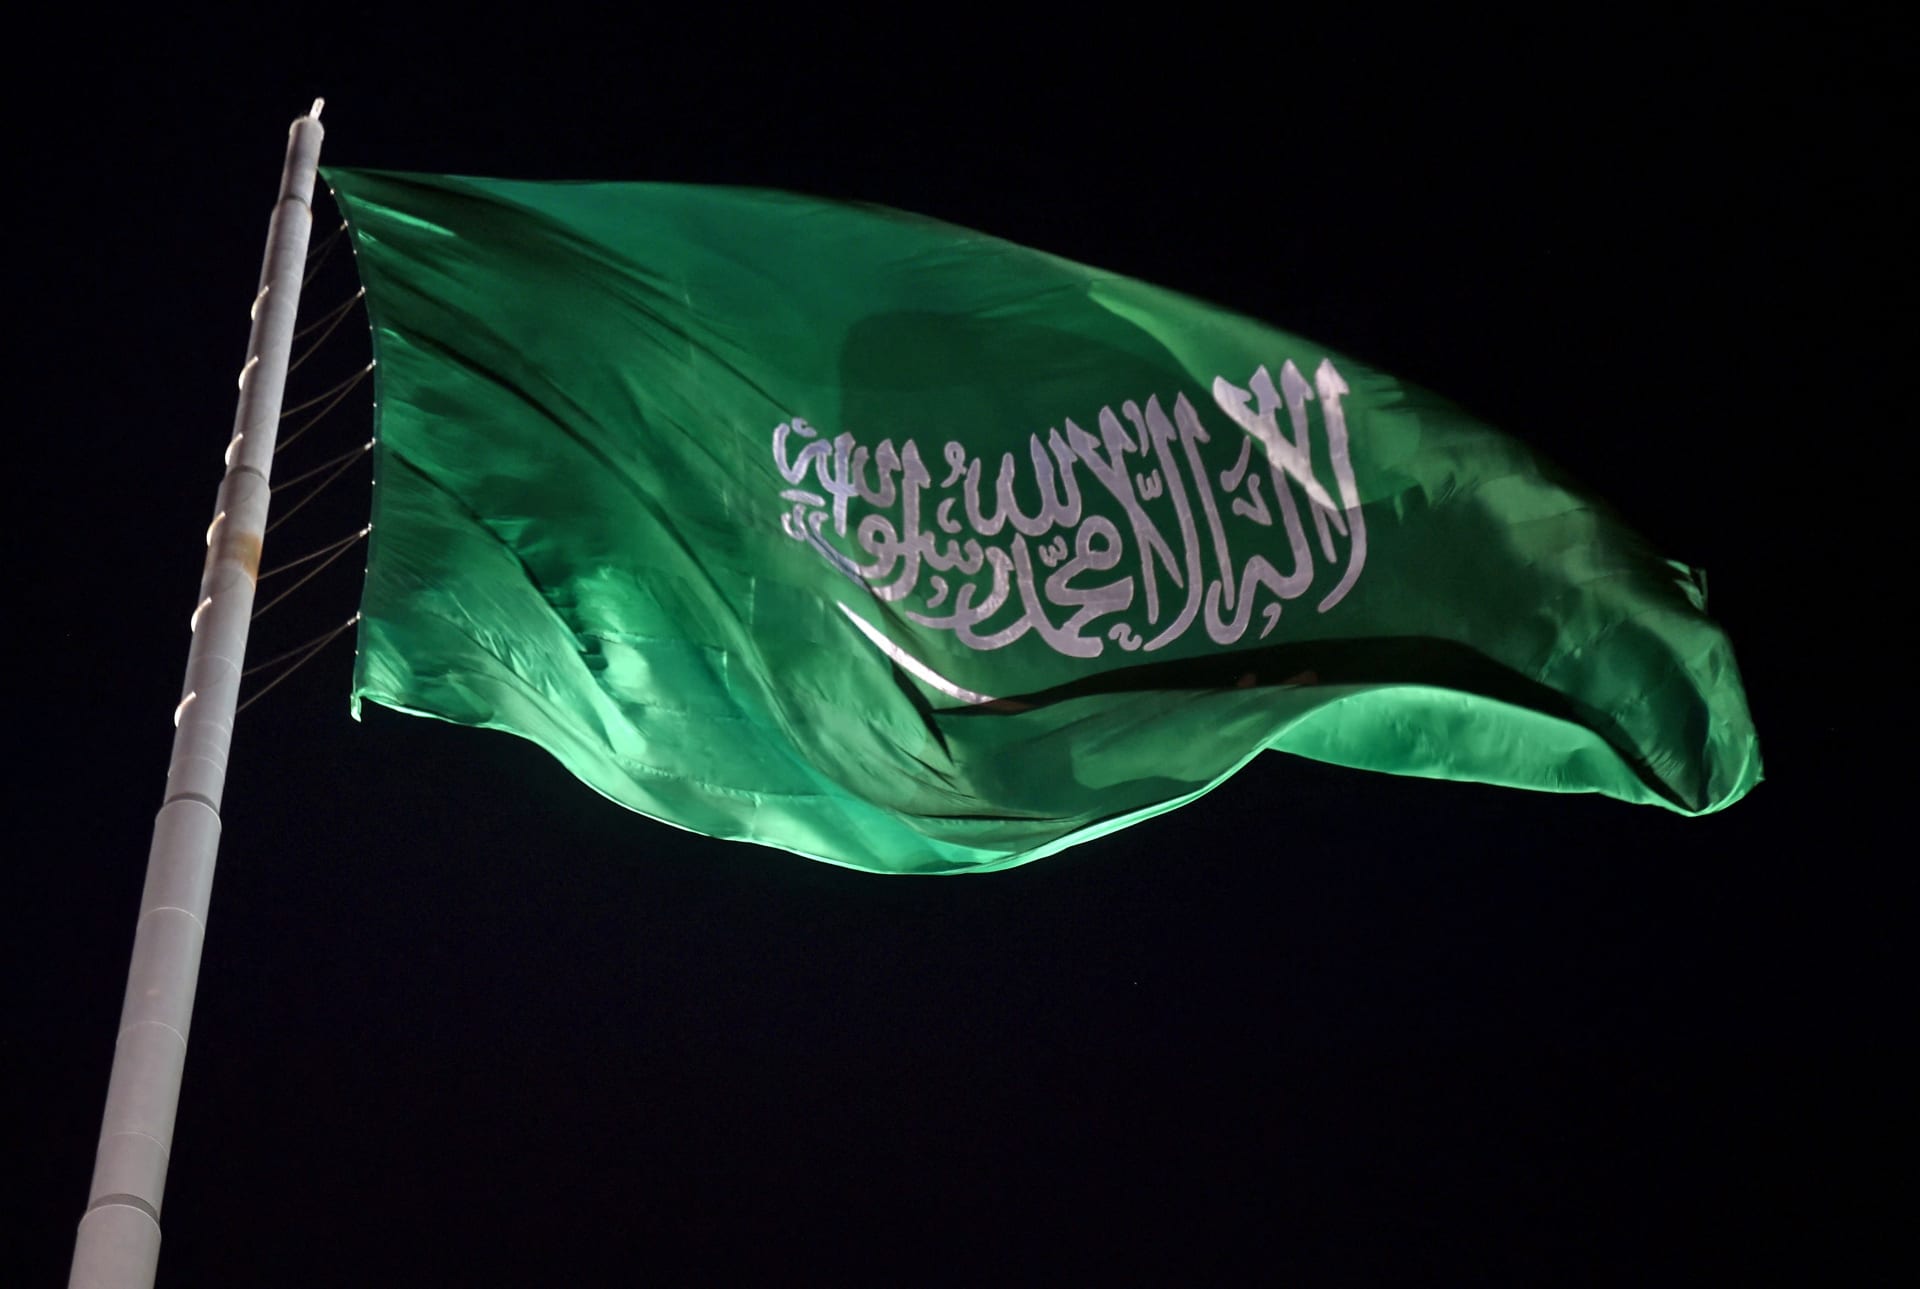 السعودية.. تنفيذ الإعدام في أردني الجنسية بتهمة تهريب الإمفيتامين المخدر